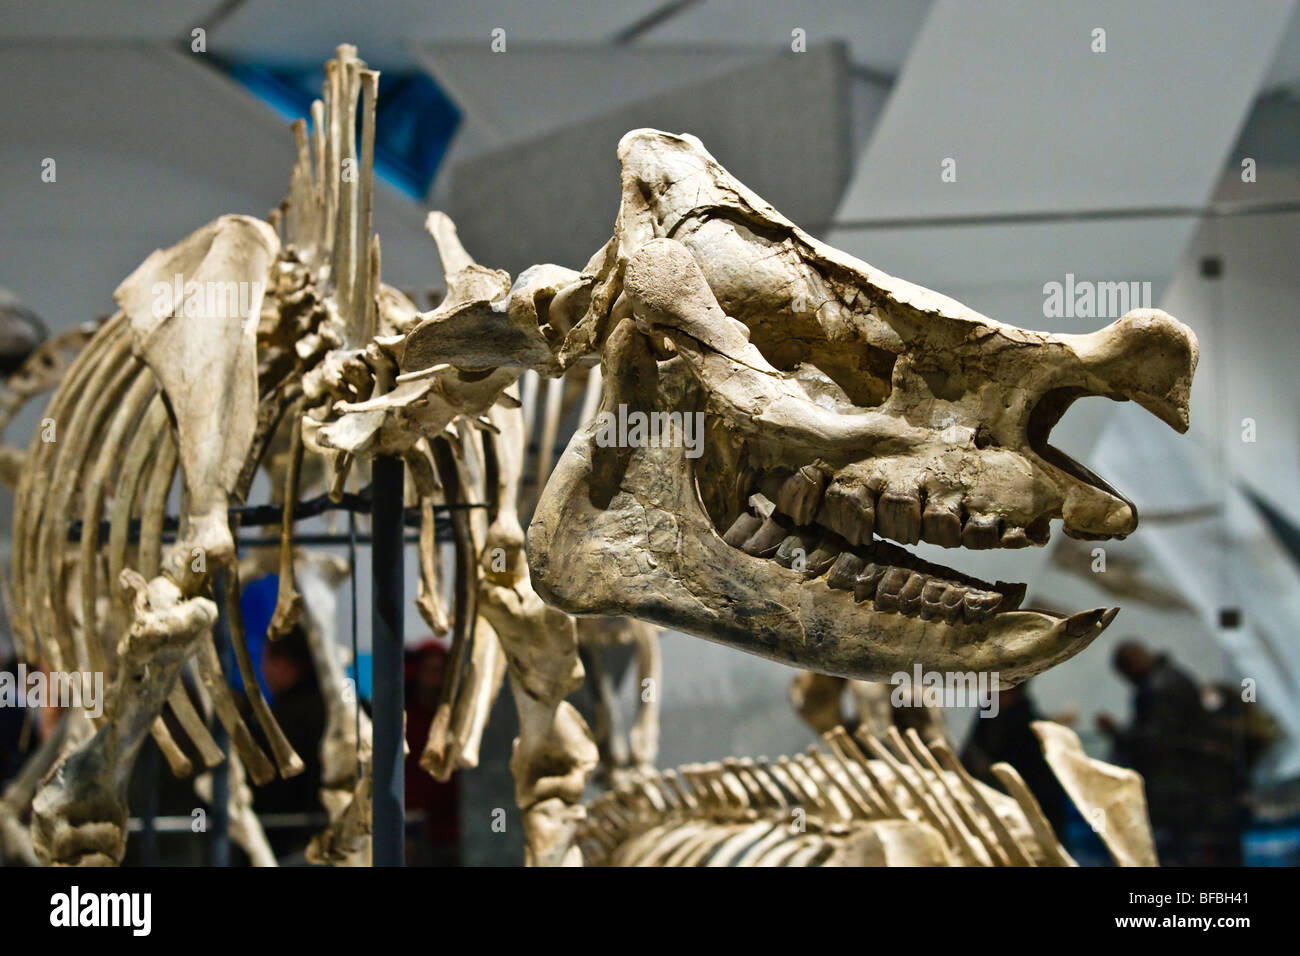 Tête disparue et rhino, squelette Nom scientifique : Menoceras arikarense, début du Miocène, 20 millions d'années Banque D'Images